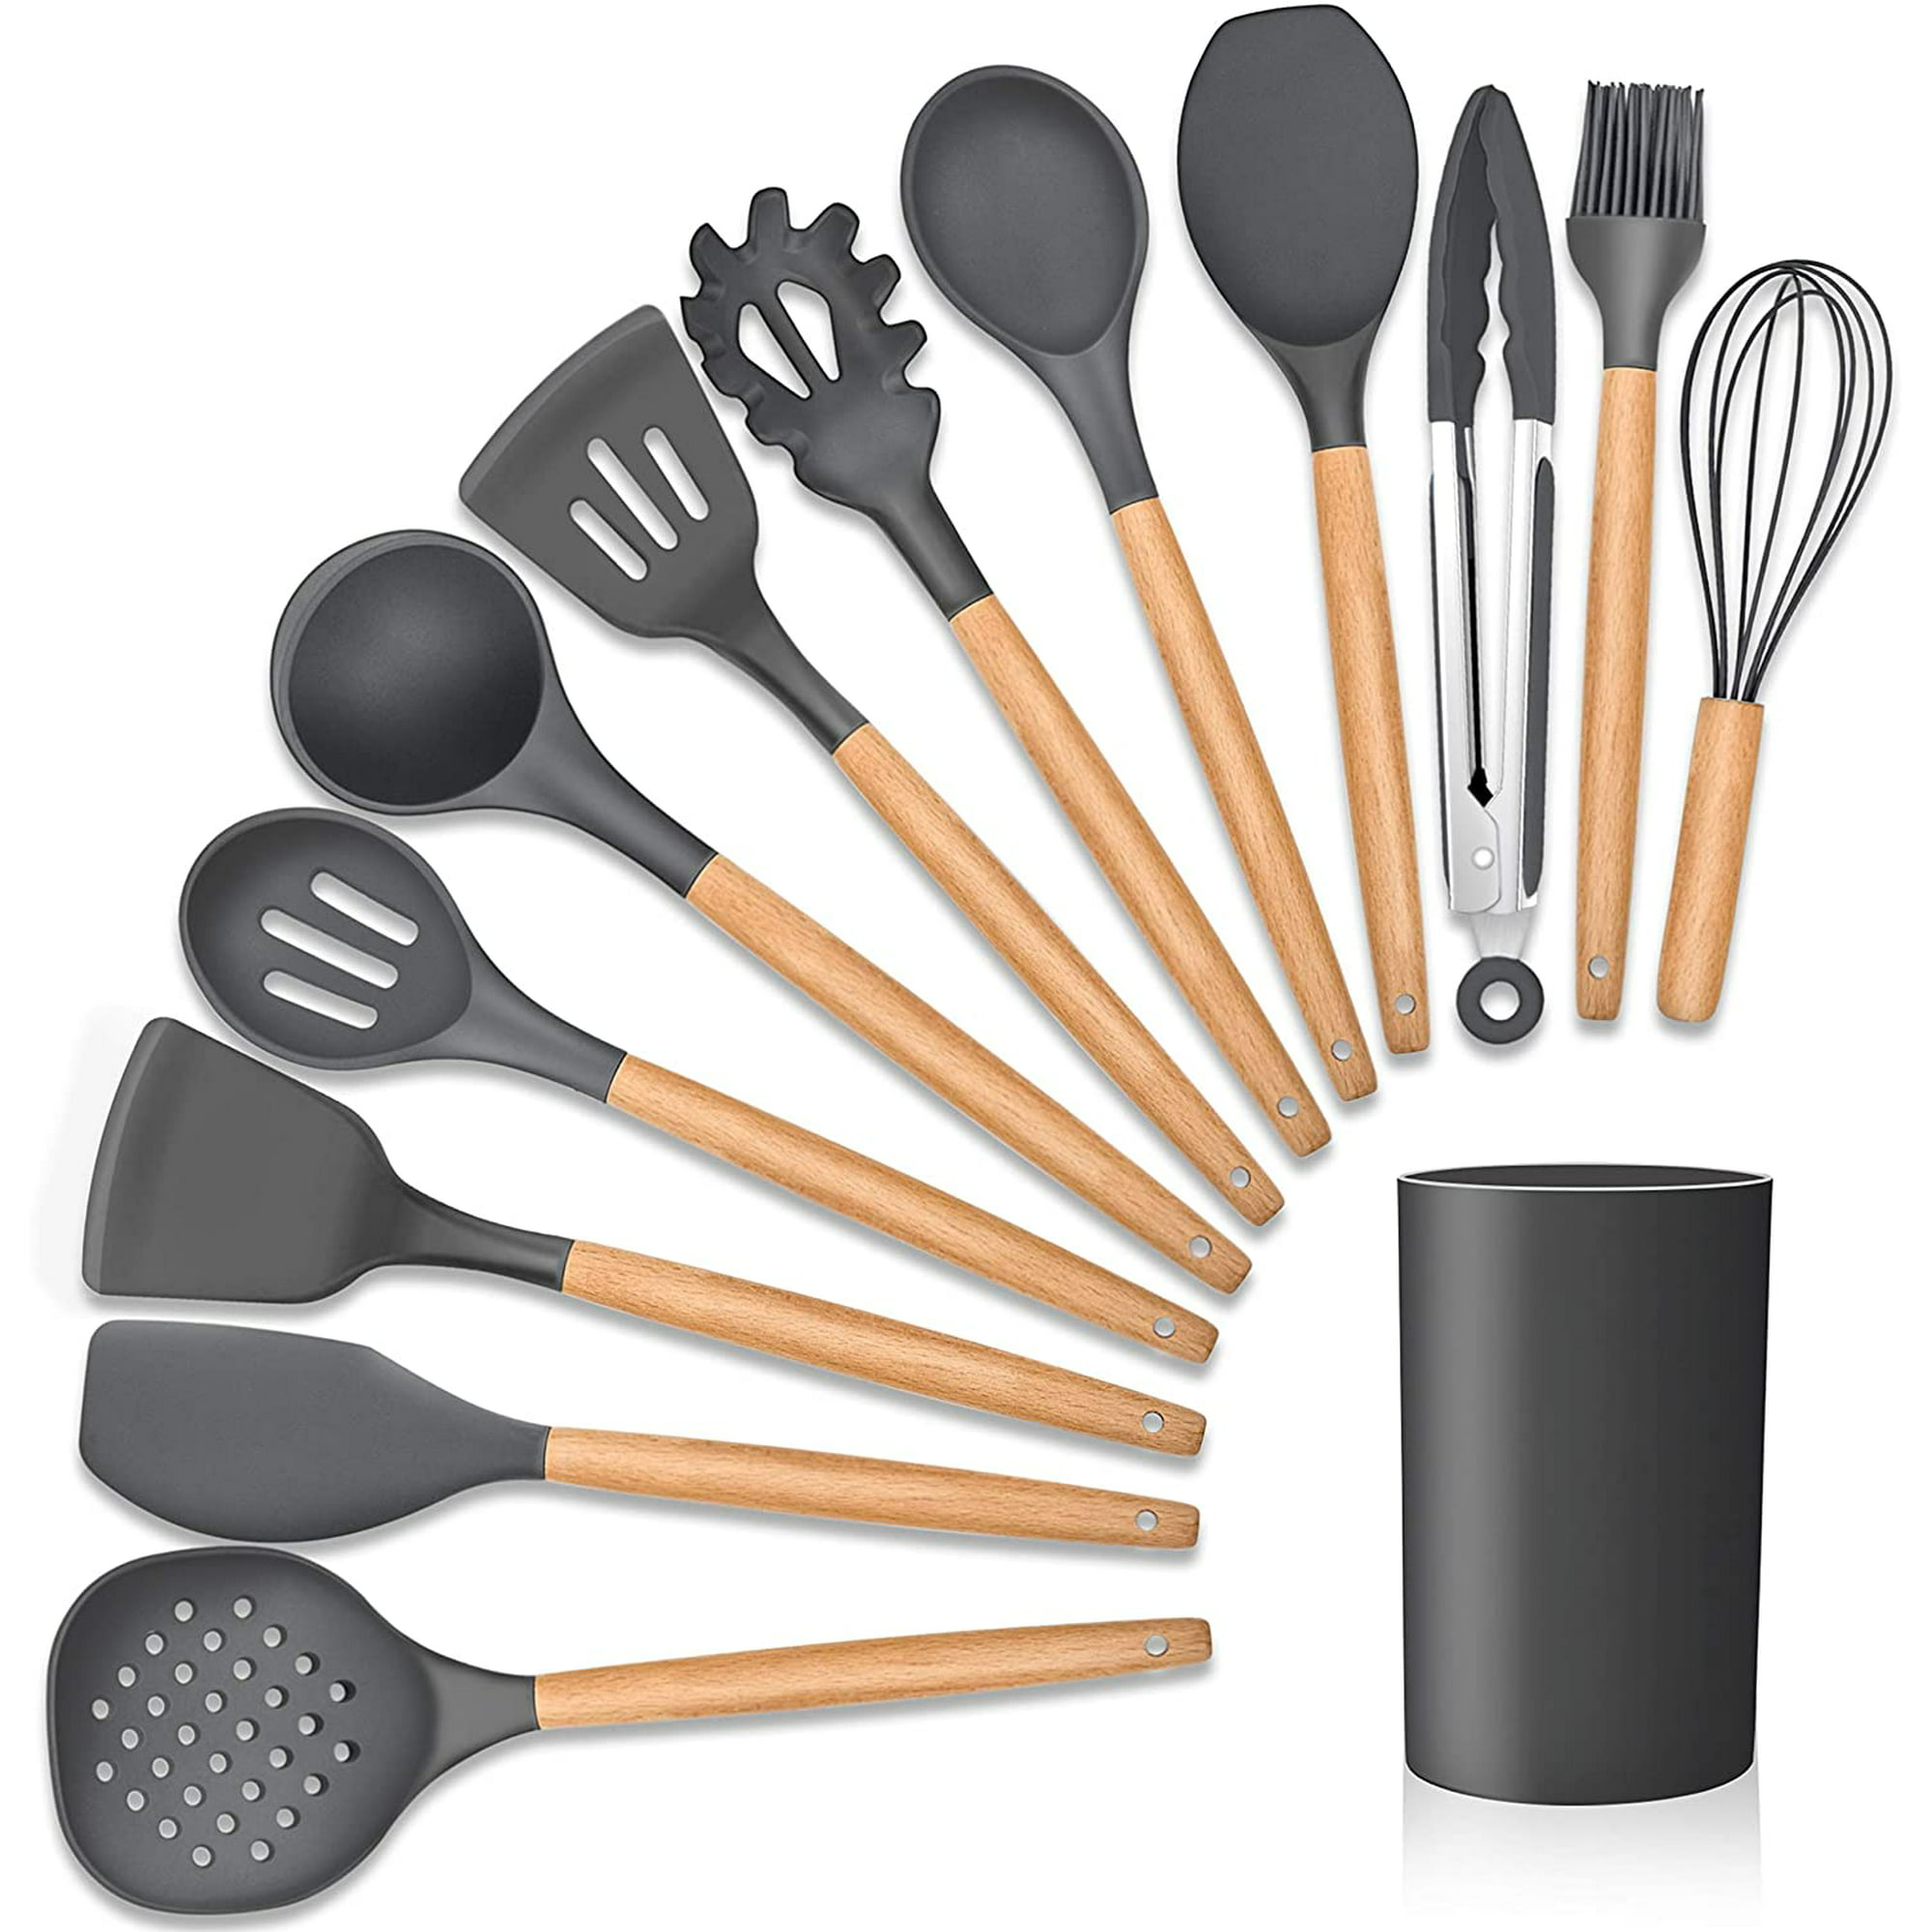 Kikcoin - Juego de 23 utensilios de cocina de silicona, mango de madera,  con soporte, espátulas de s…Ver más Kikcoin - Juego de 23 utensilios de